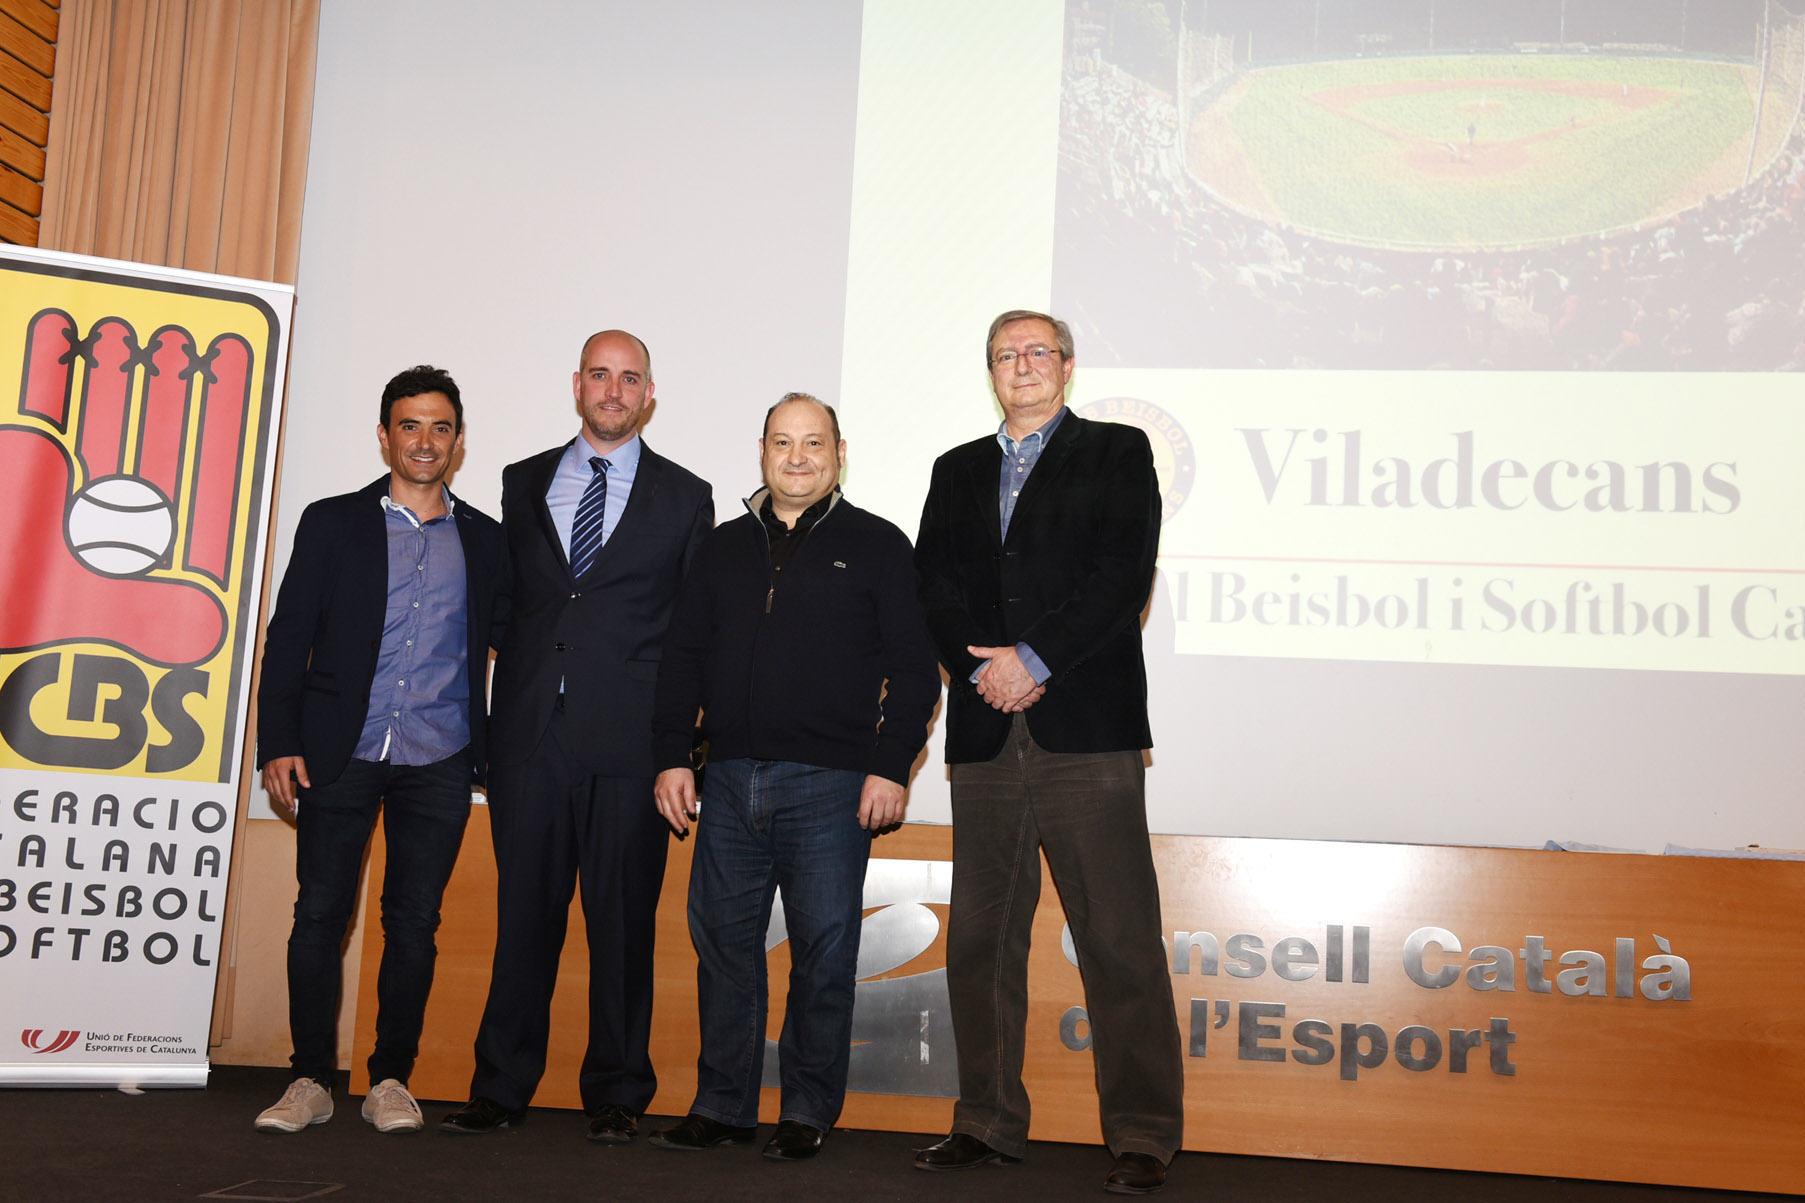 Viladecans serà un referent del beisbol i softbol català